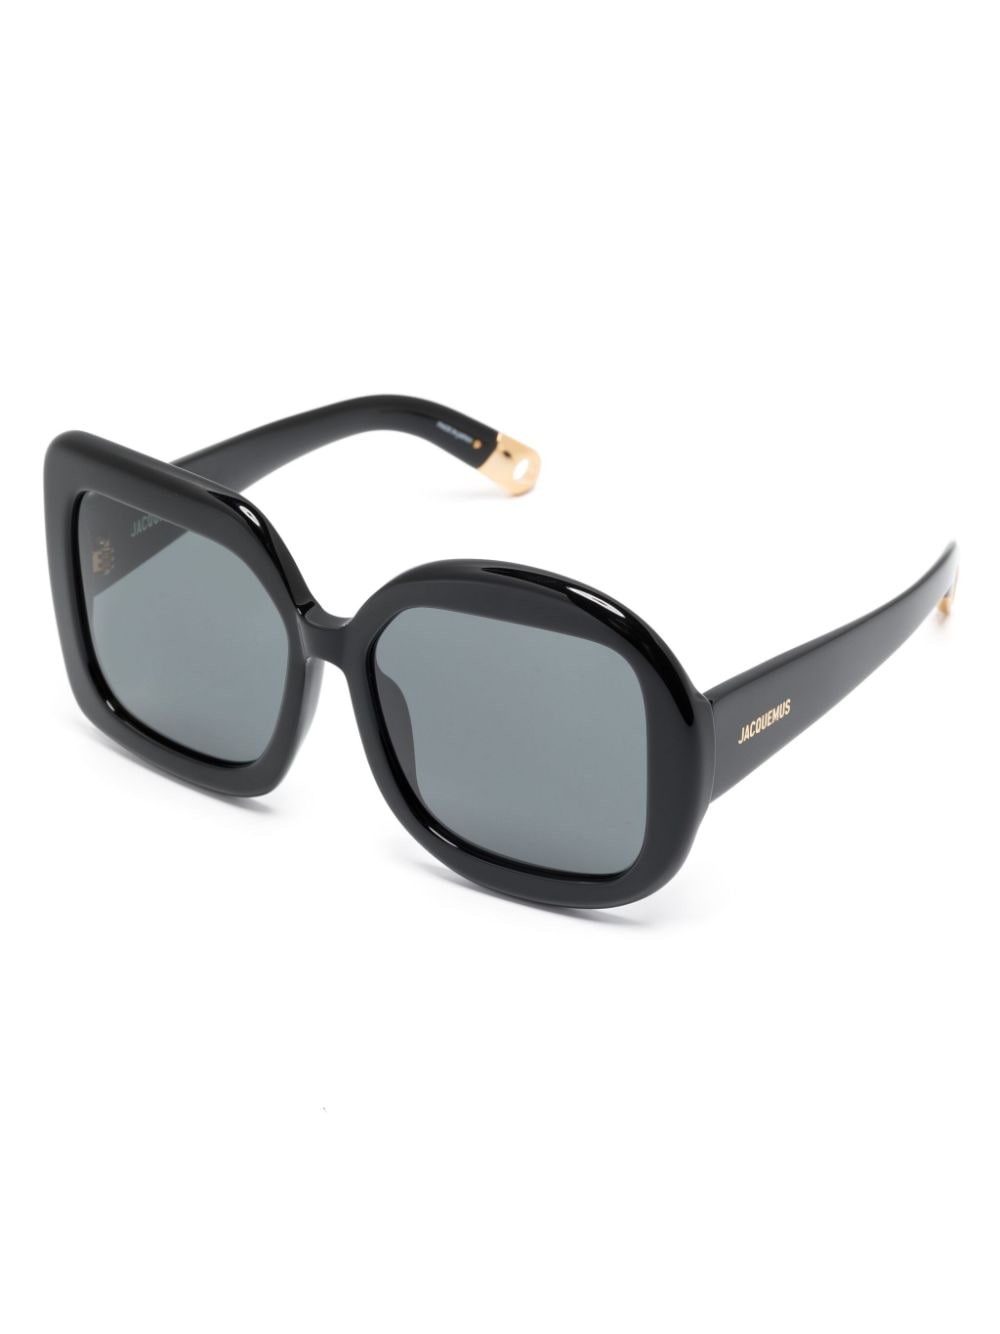 Jacquemus Les Lunettes Carré Rond zonnebril met oversized montuur - Zwart